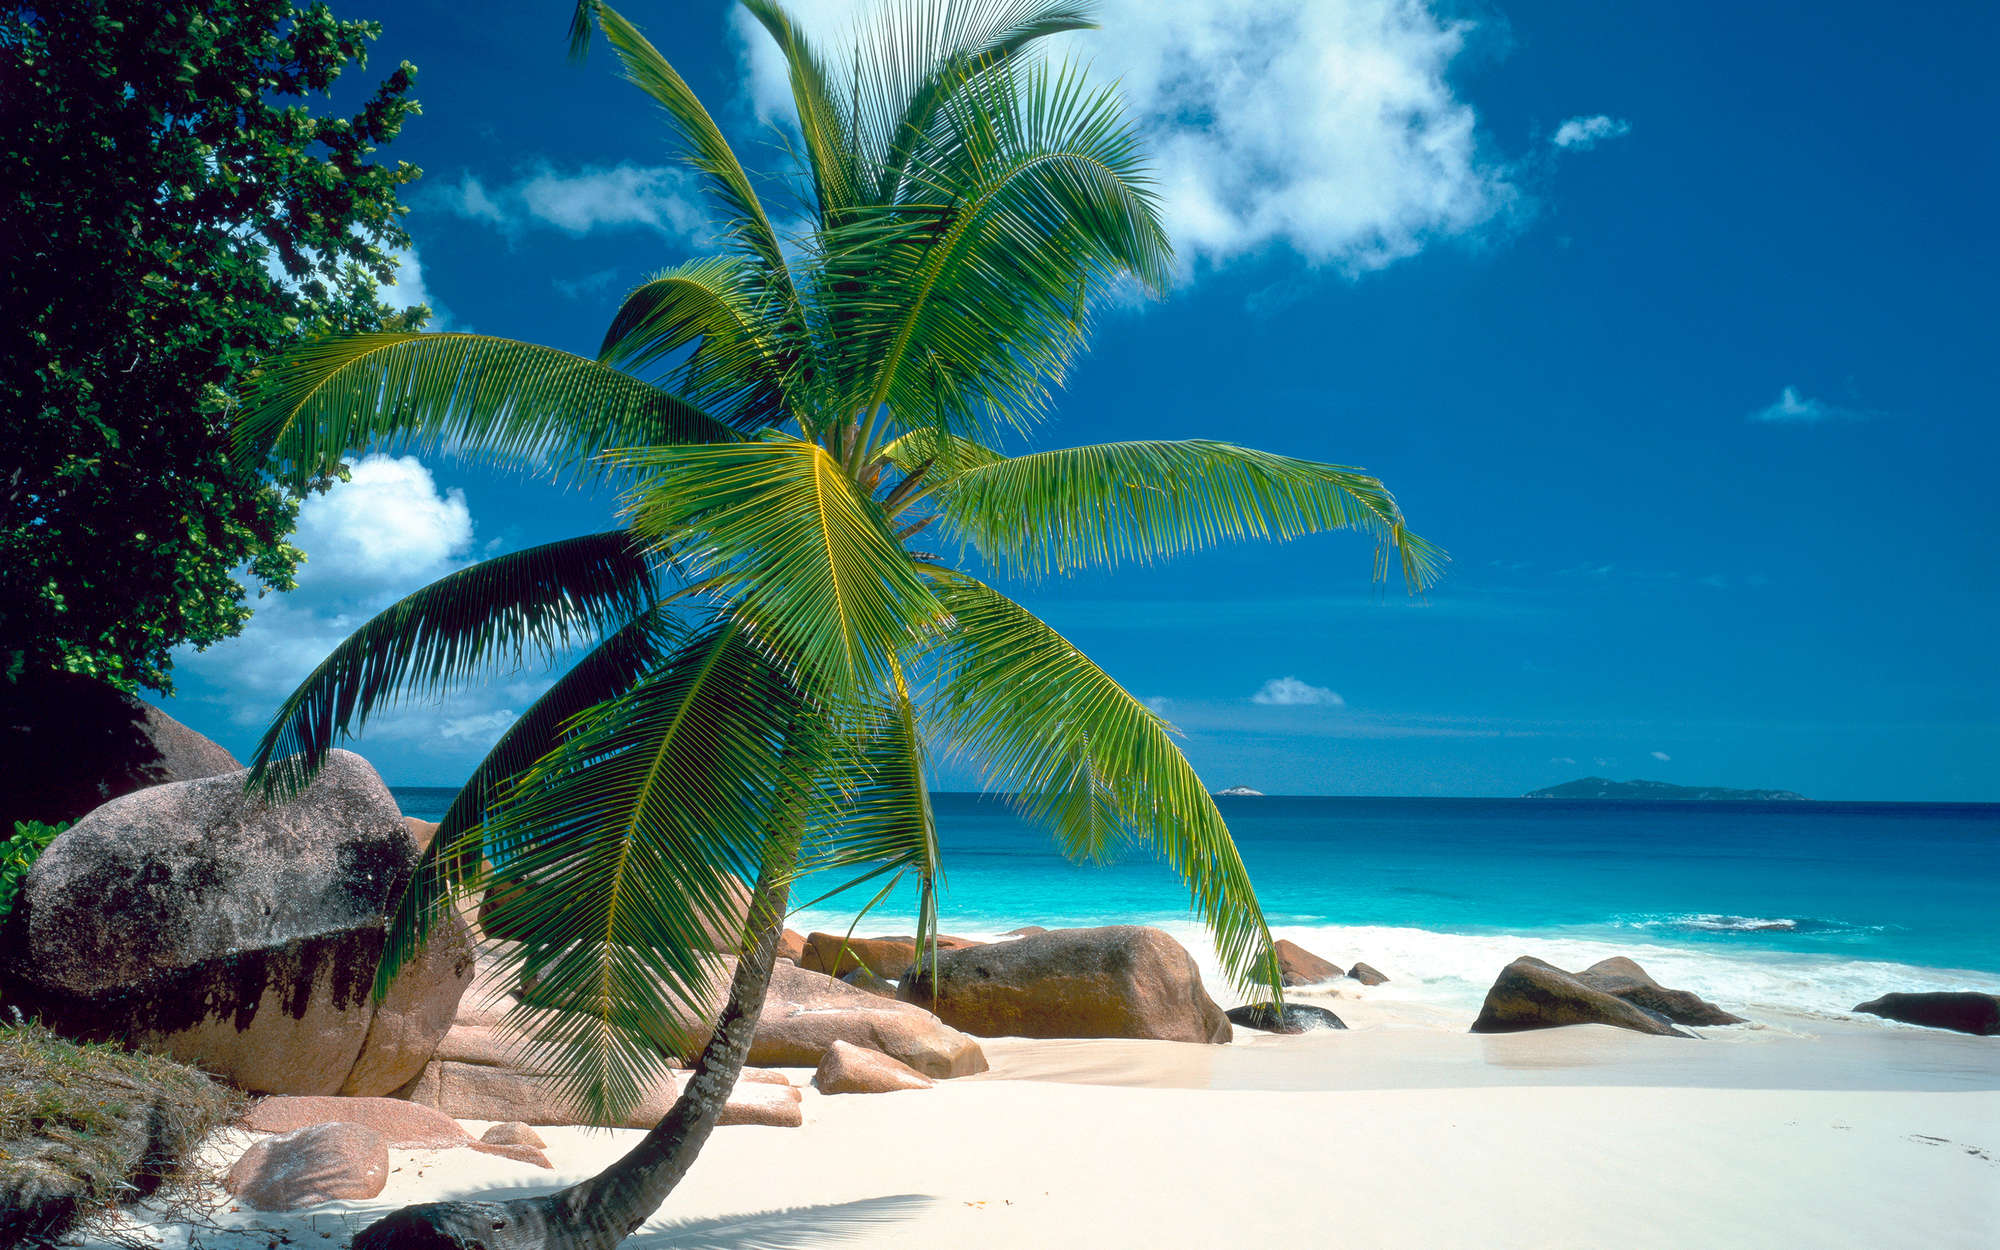             Beach with palm tree mural - Matt smooth fleece
        